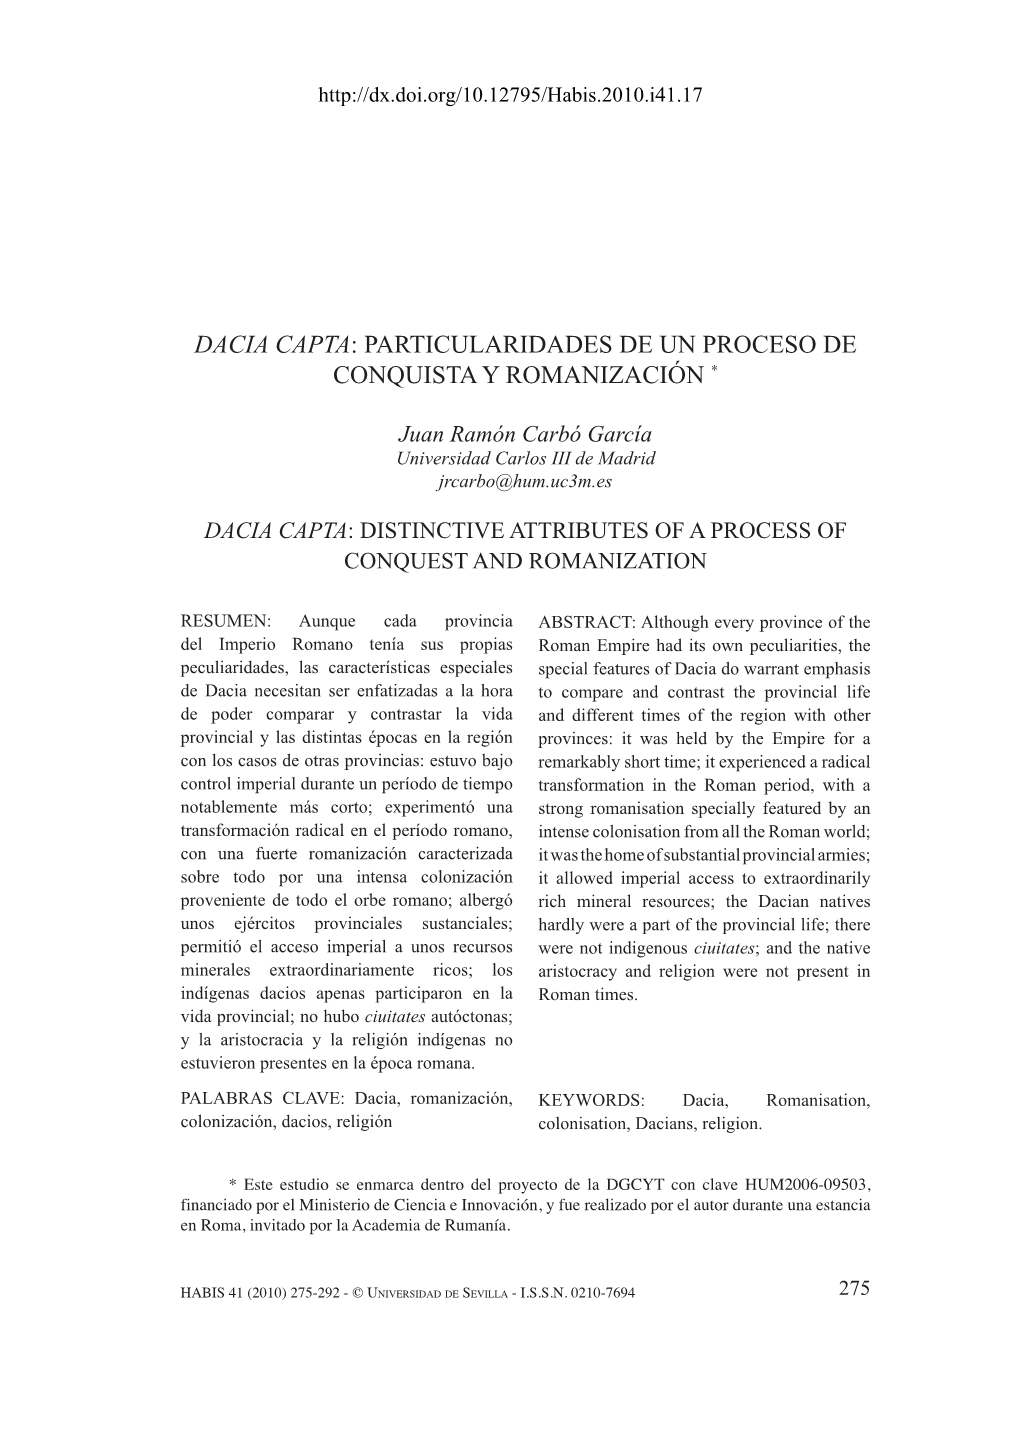 Dacia Capta: Particularidades De Un Proceso De Conquista Y Romanización *